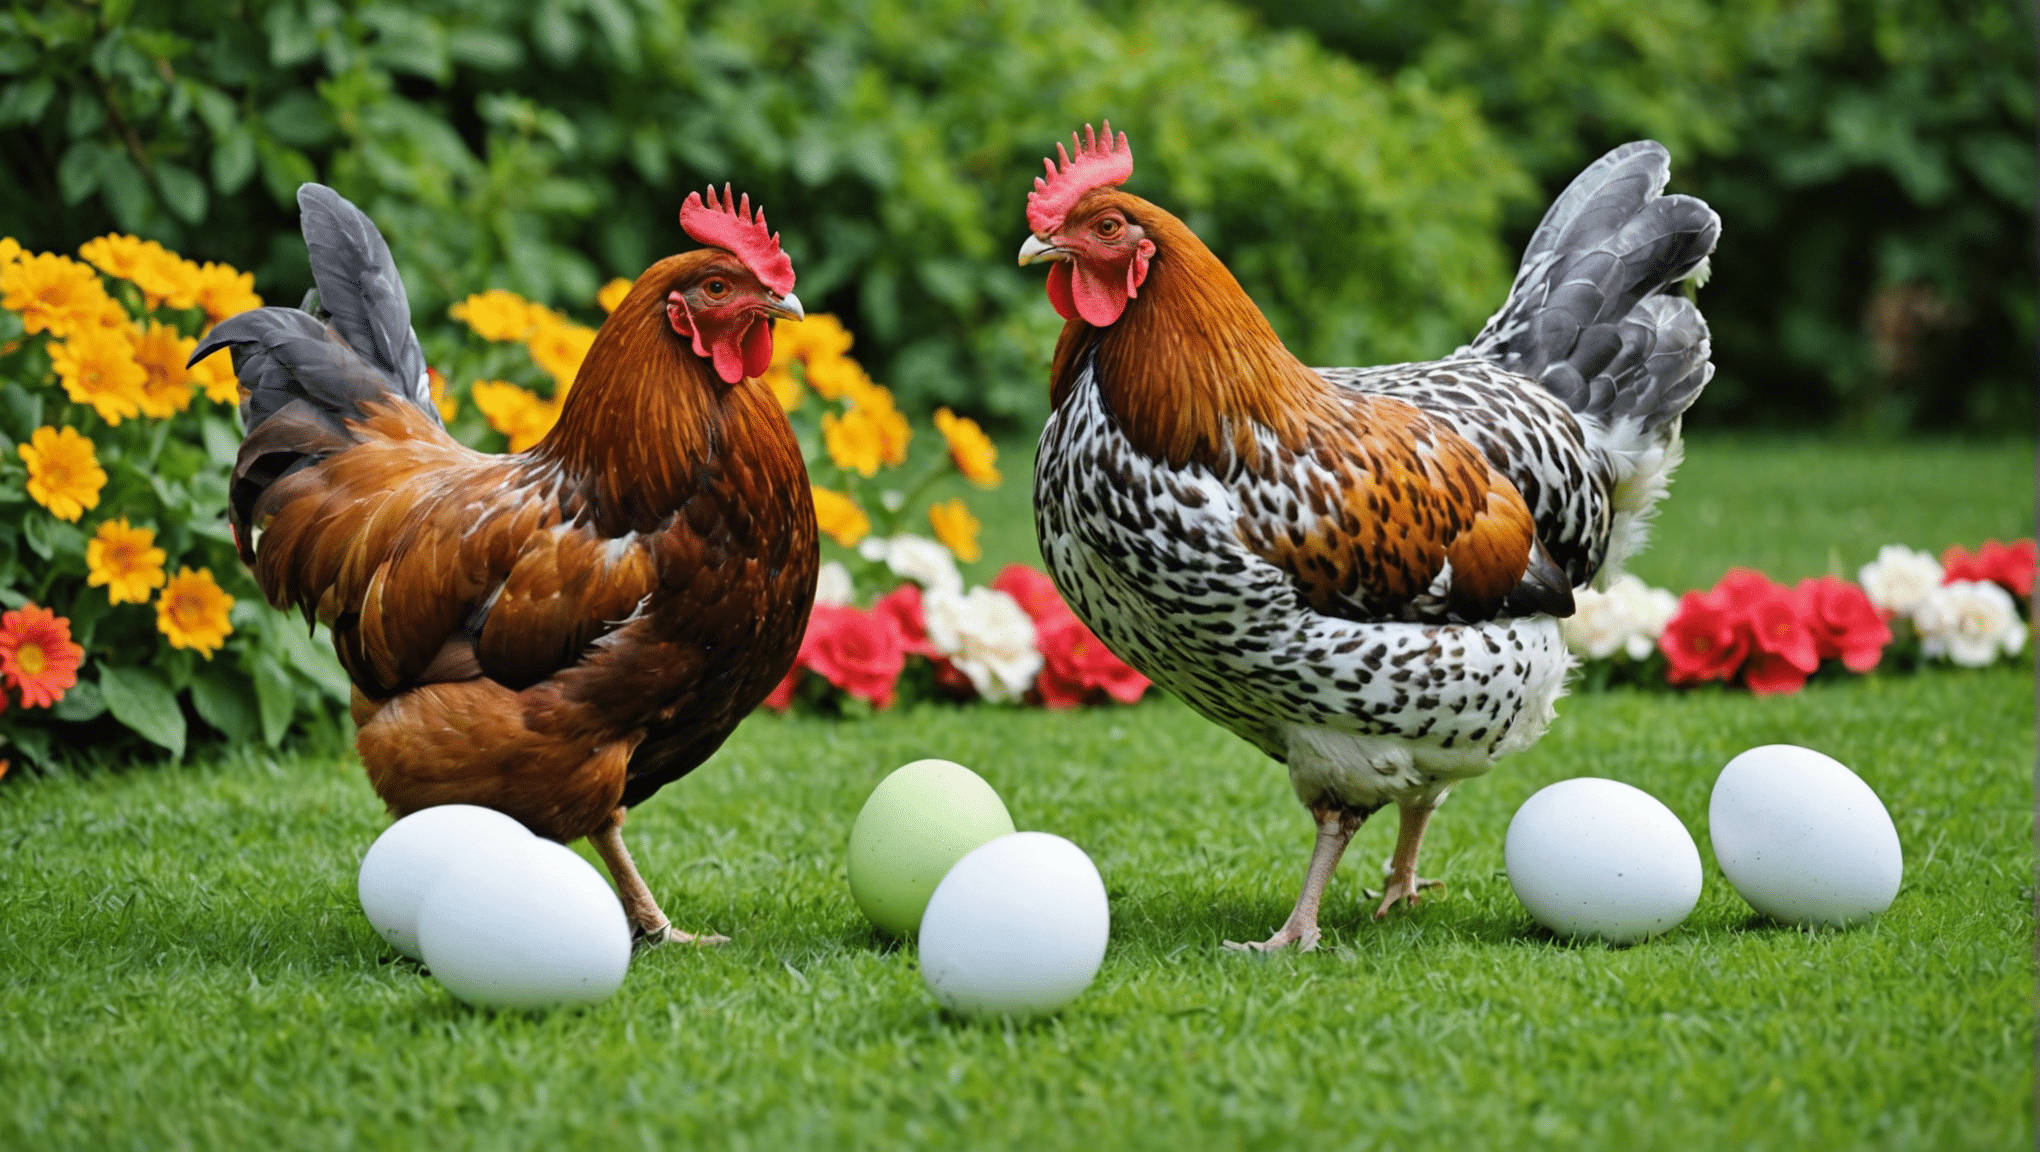 Erfahren Sie mehr über die Eiablagezeiten verschiedener Hühnerrassen und ihre individuellen Muster bei der Eierproduktion.